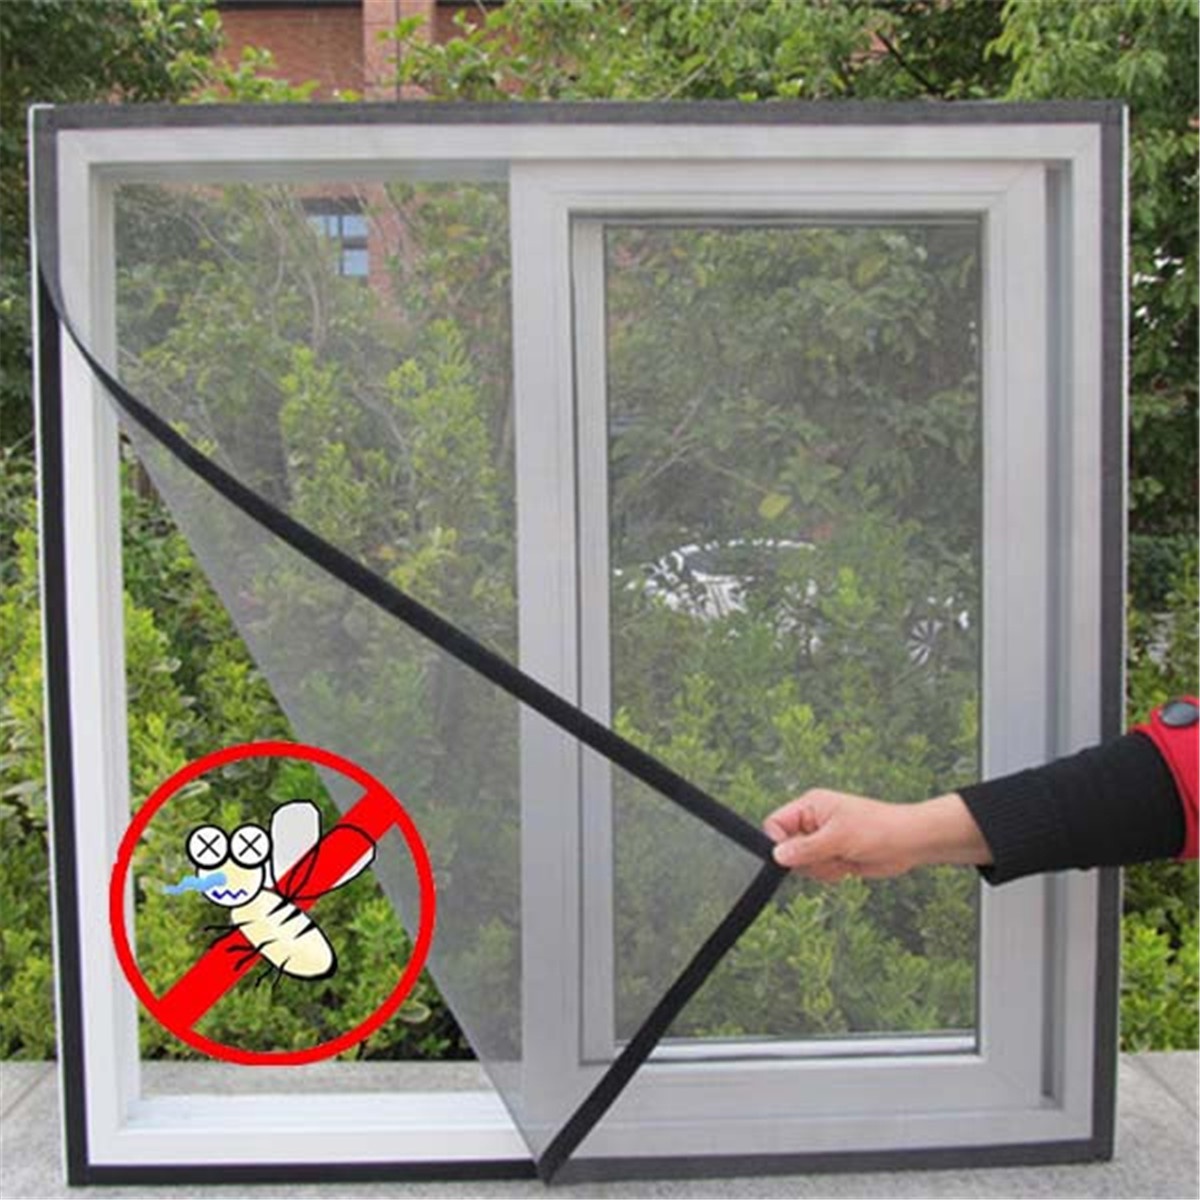 Kaufe Neue Indoor Insekten Fliegen Moskito Fenster Bildschirm Vorhang  Moskito Netting Tür Anti Moskito Net Für Küche Fenster Hause Schutz